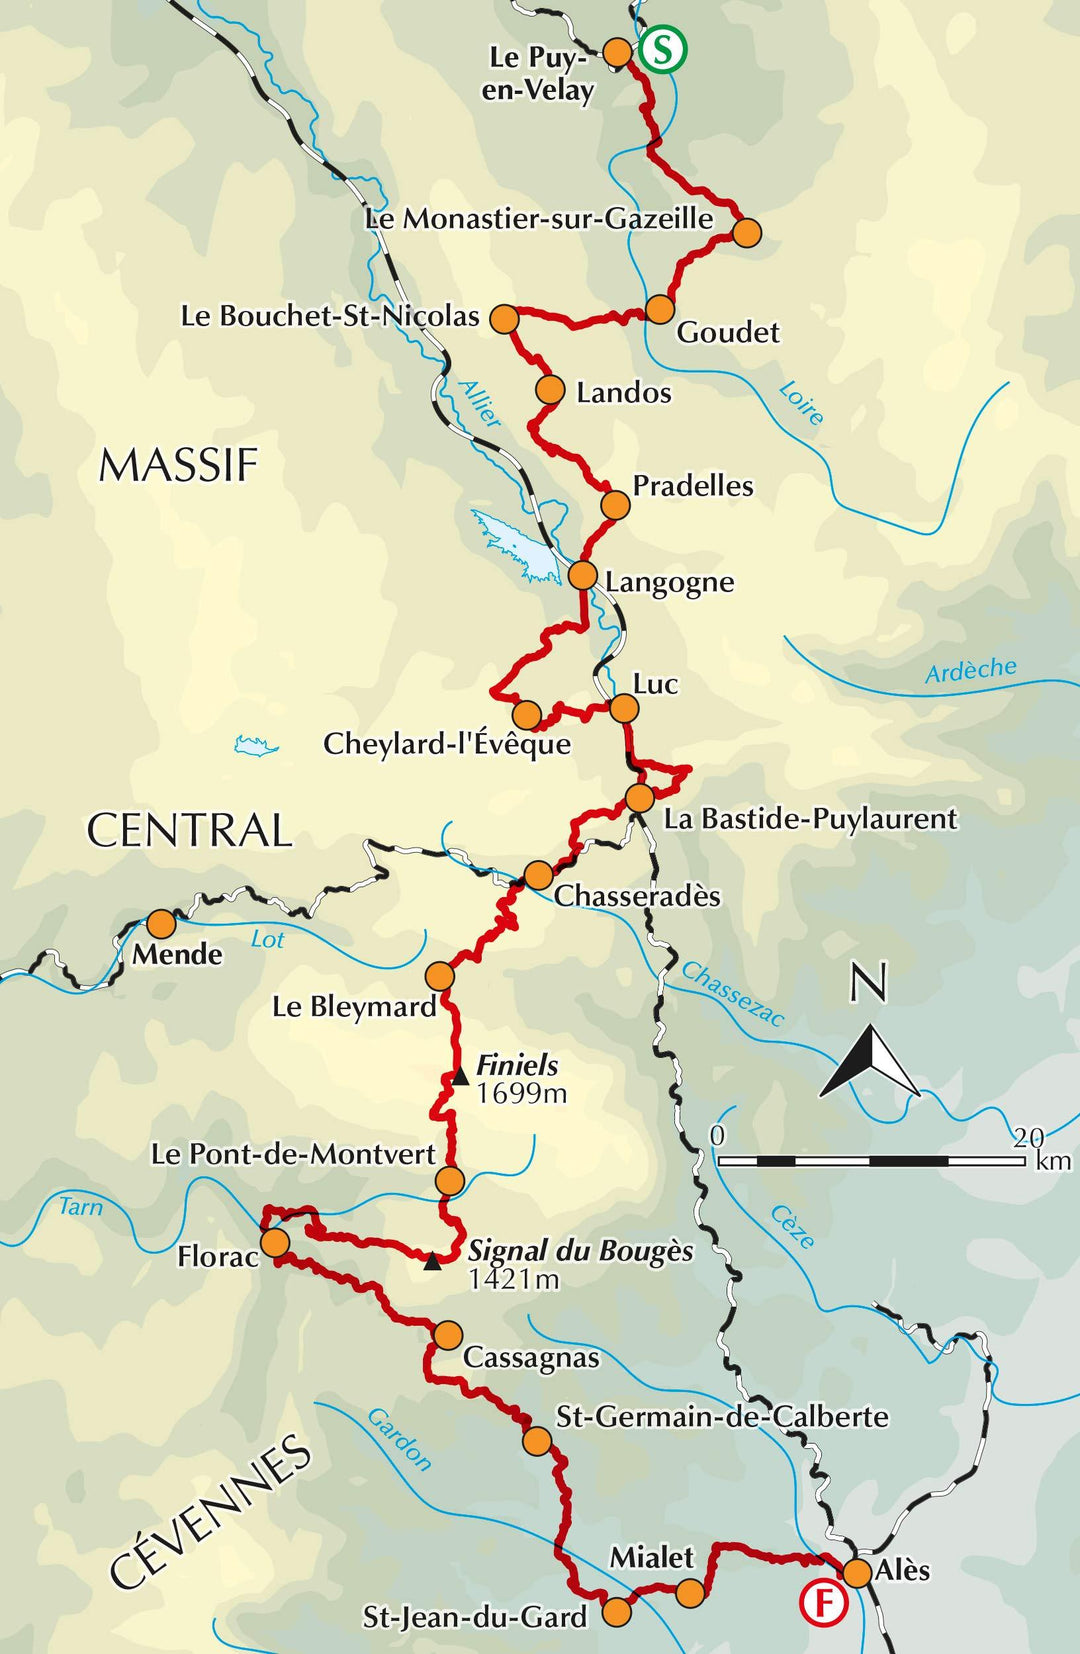 Guide de randonnées (en anglais) - Robert Louis Stevenson trail : GR70 through the Massif Central | Cicerone guide de randonnée Cicerone 